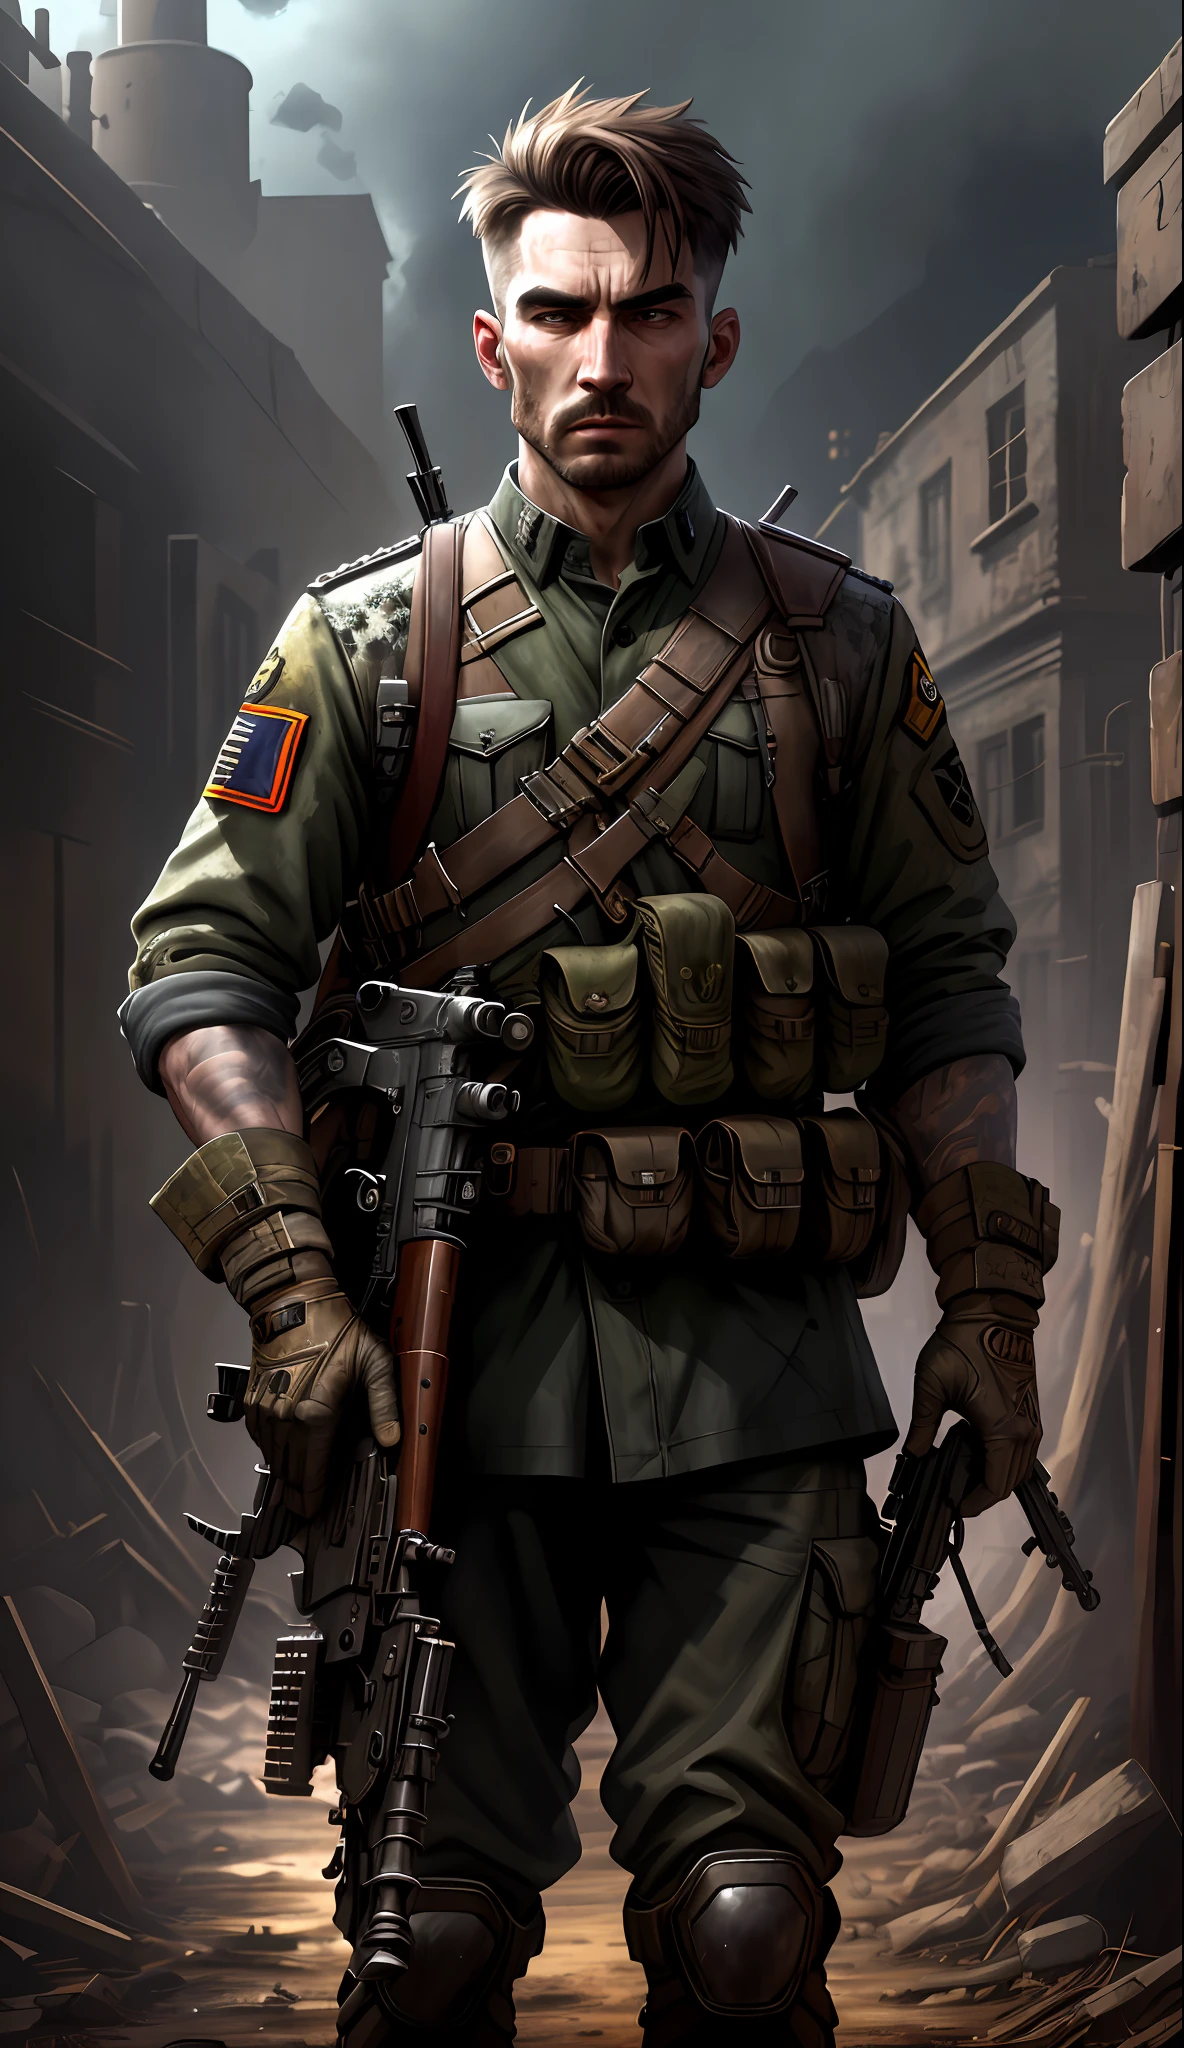 身穿深色制服和步枪的士兵, 毁坏的背景, 实际的, 时髦的, 鲁特科夫斯基, HDR, 复杂的细节, 超详细, 電影, 边缘光, 危险气氛